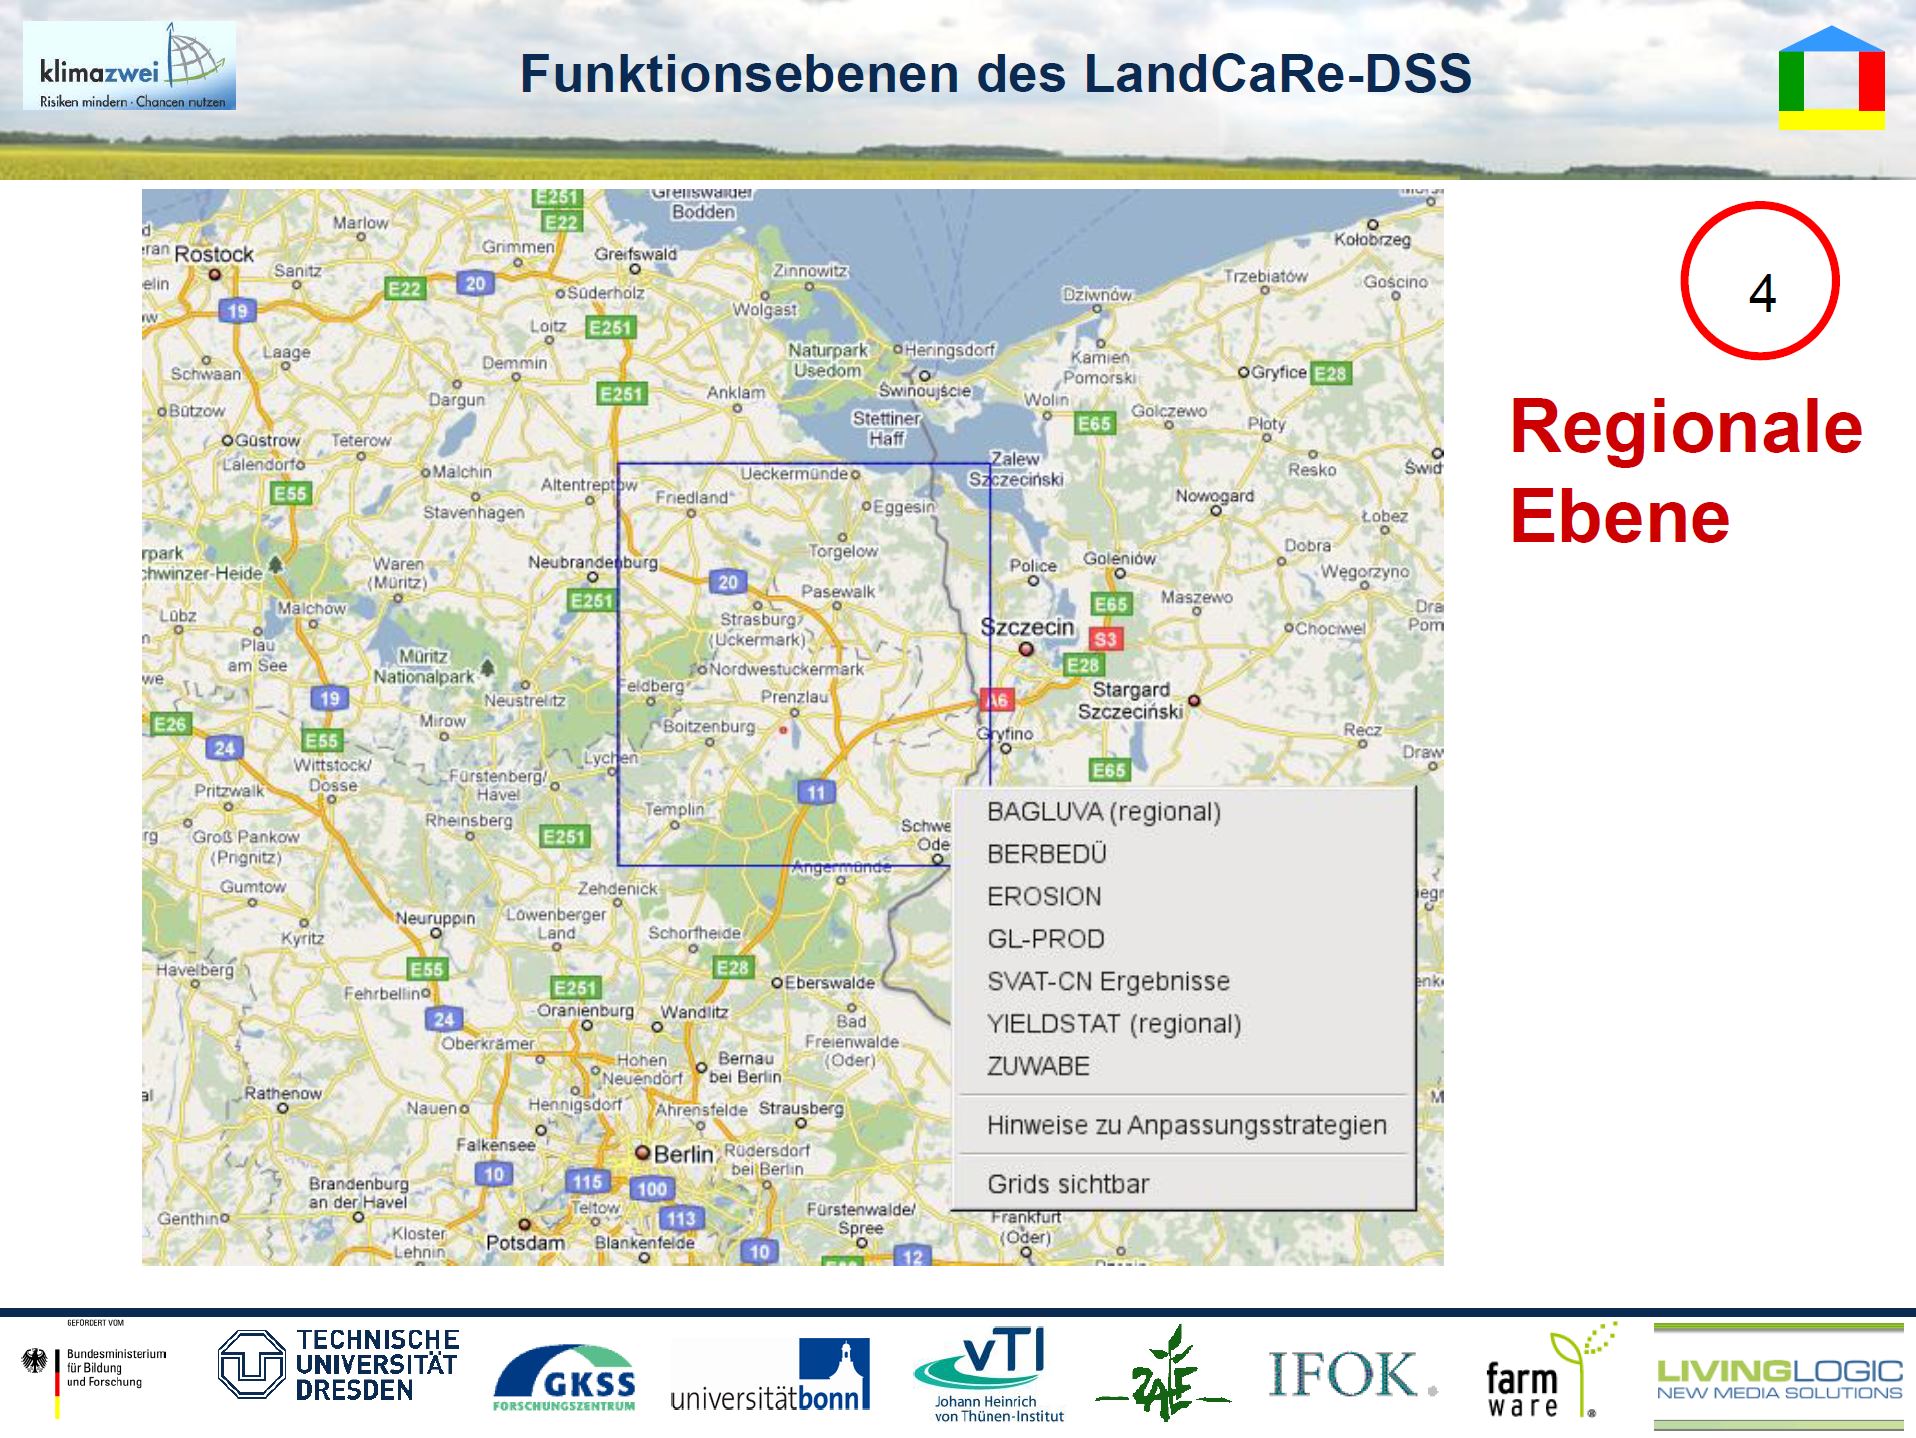 21/33 - LandCaRe-DSS - Funktionsebenen - Regionale Ebene